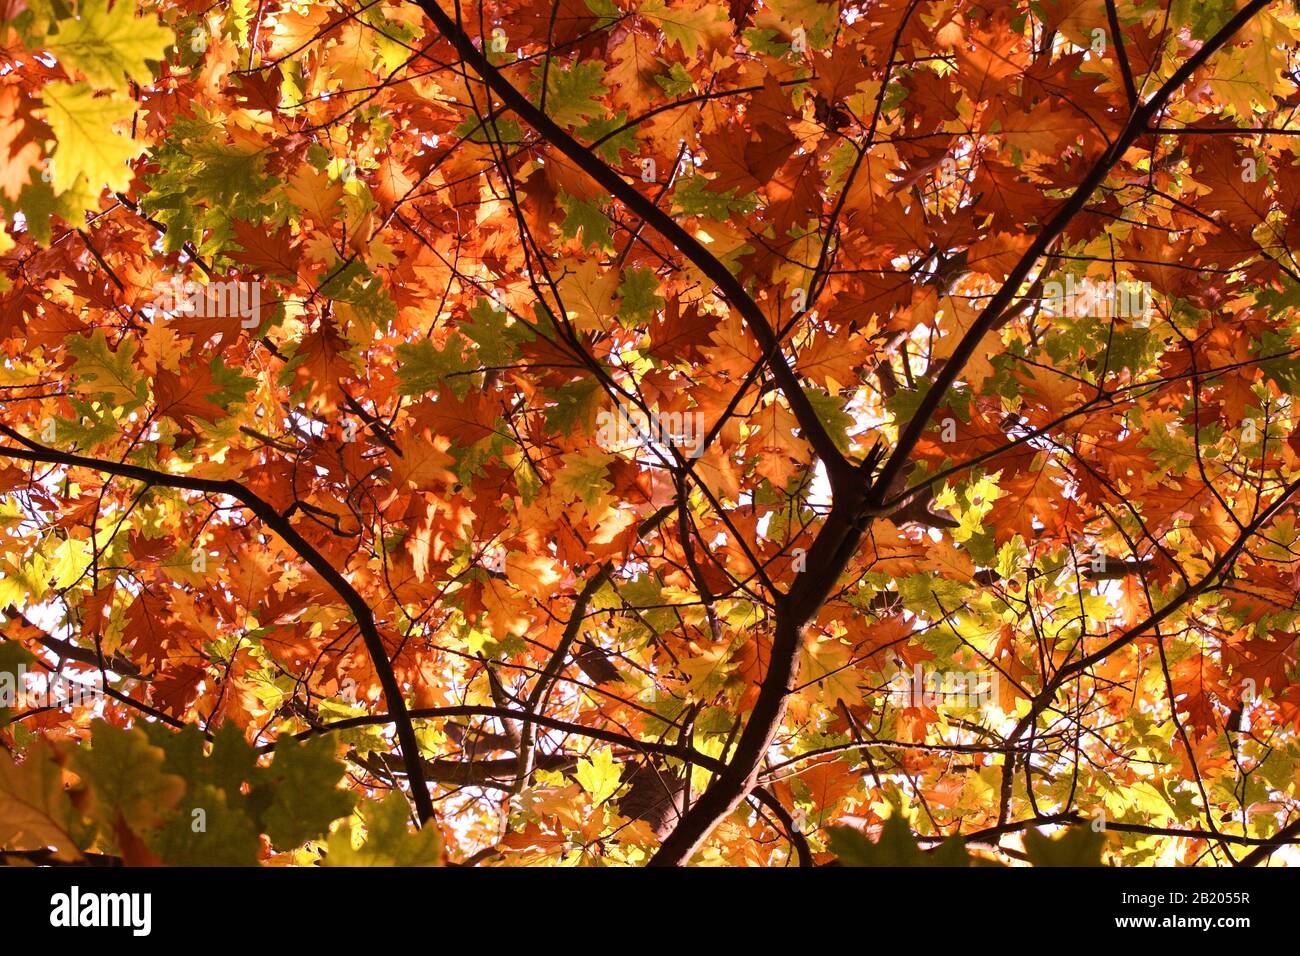 Feuilles d'automne dorées sur une variété d'arbres (surtout des acers) Banque D'Images